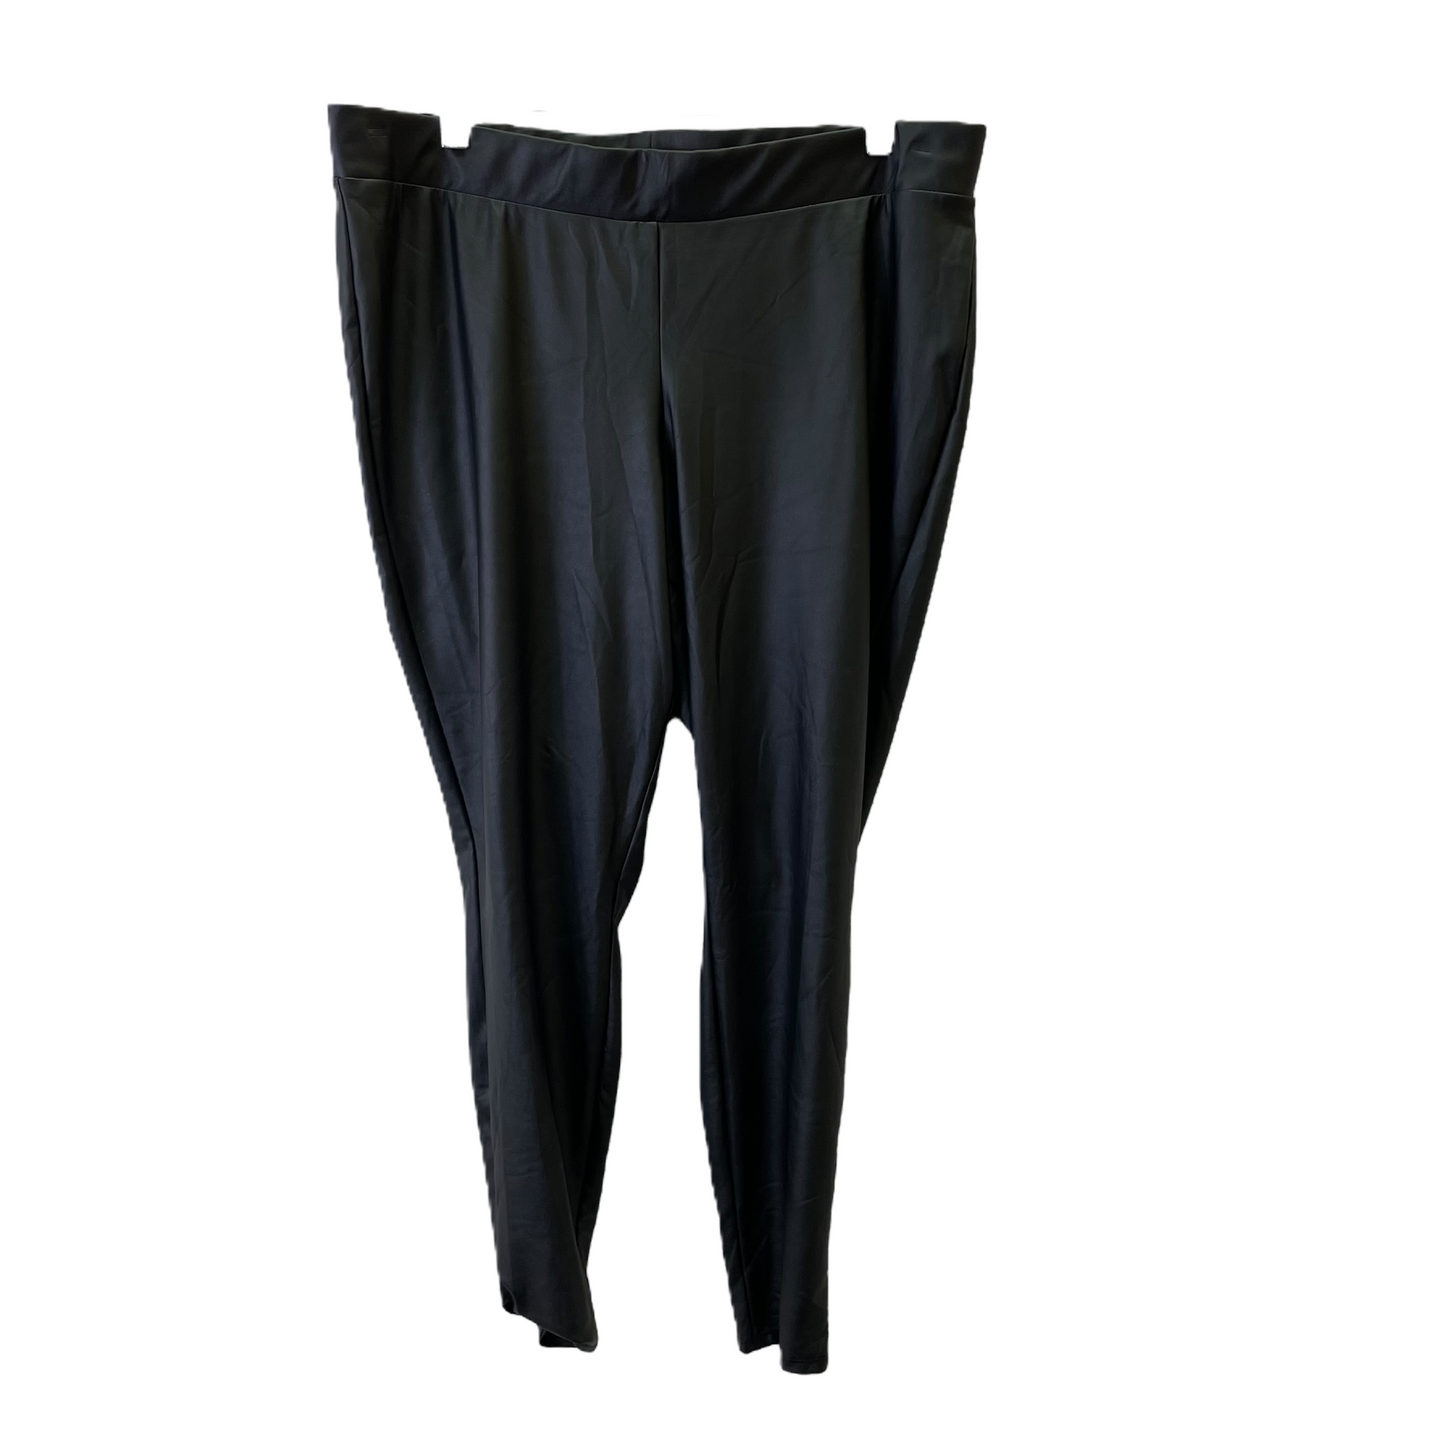 Black Pants Leggings By Torrid, Size: 2x